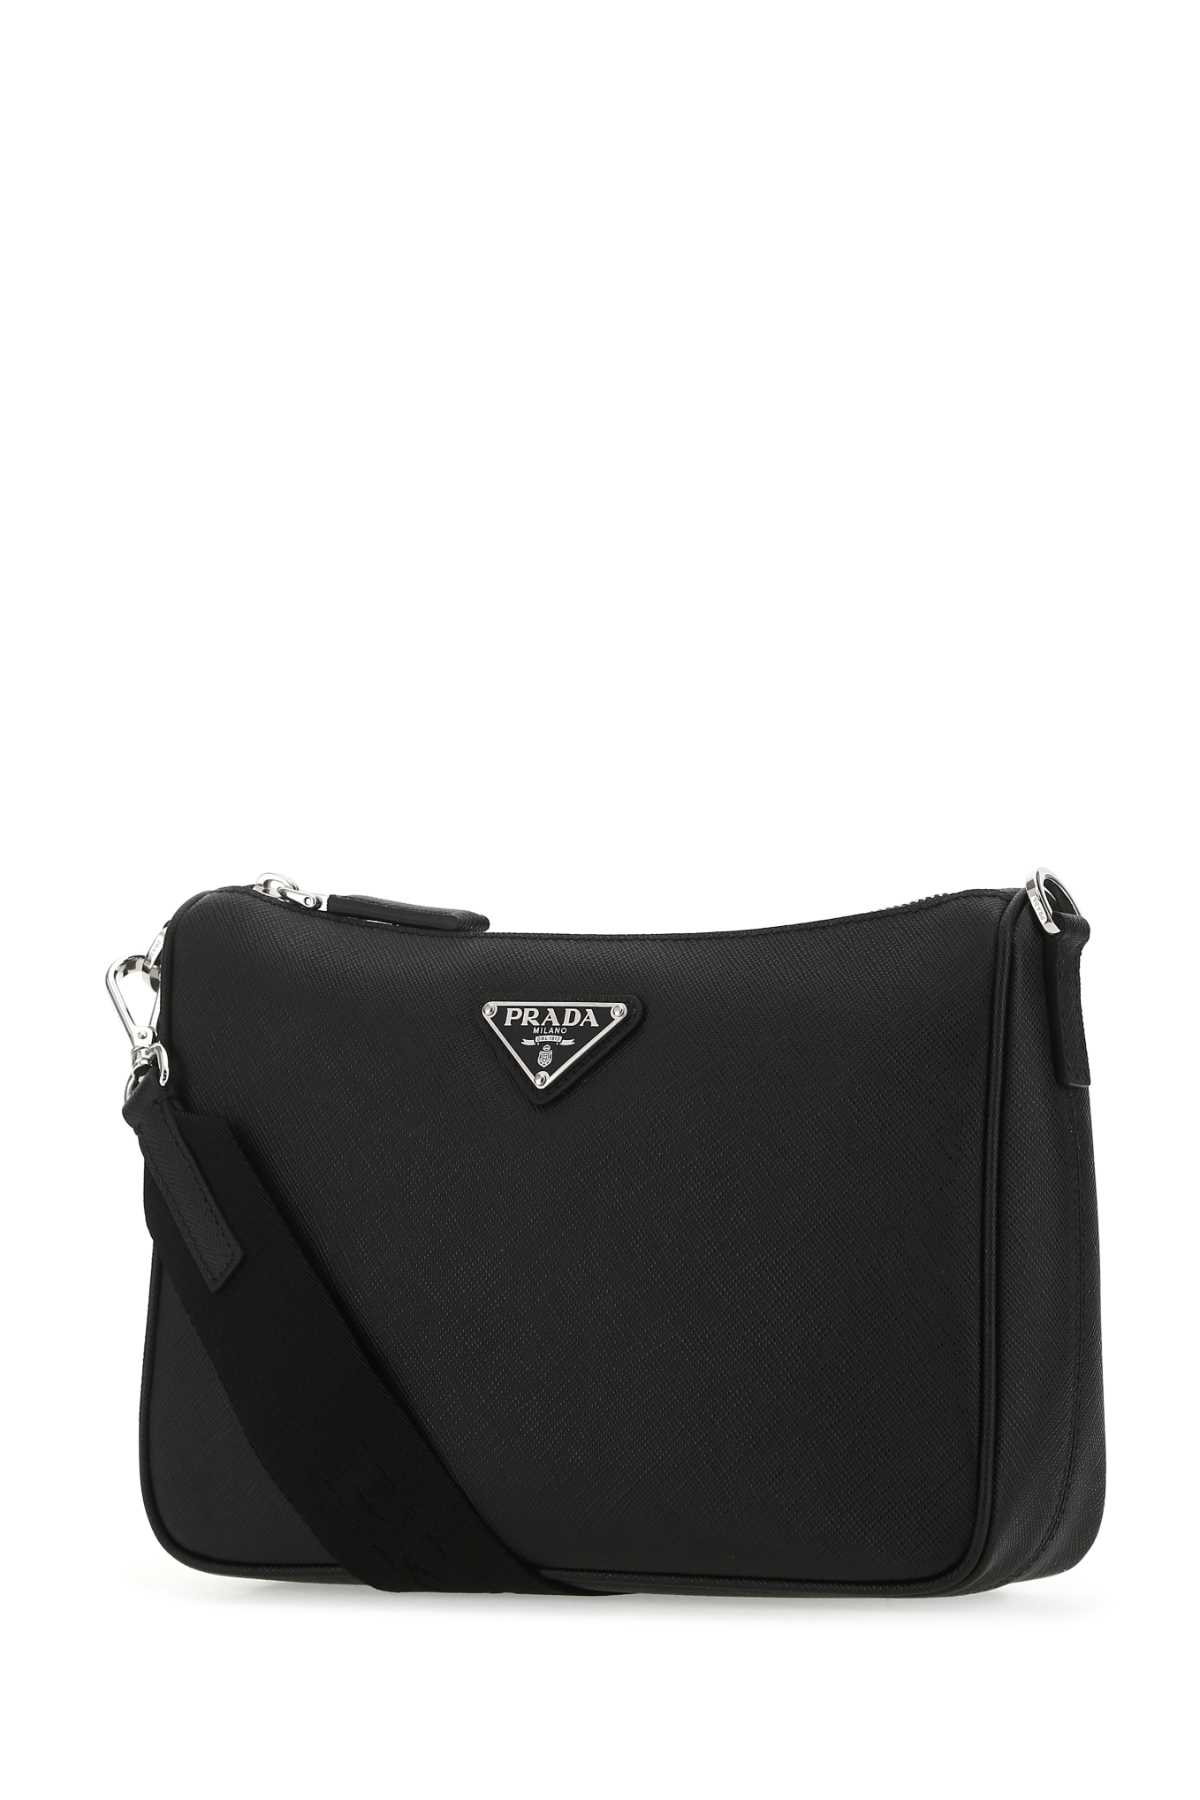 Shop Prada Black Leather Crossbody Bag In F0002